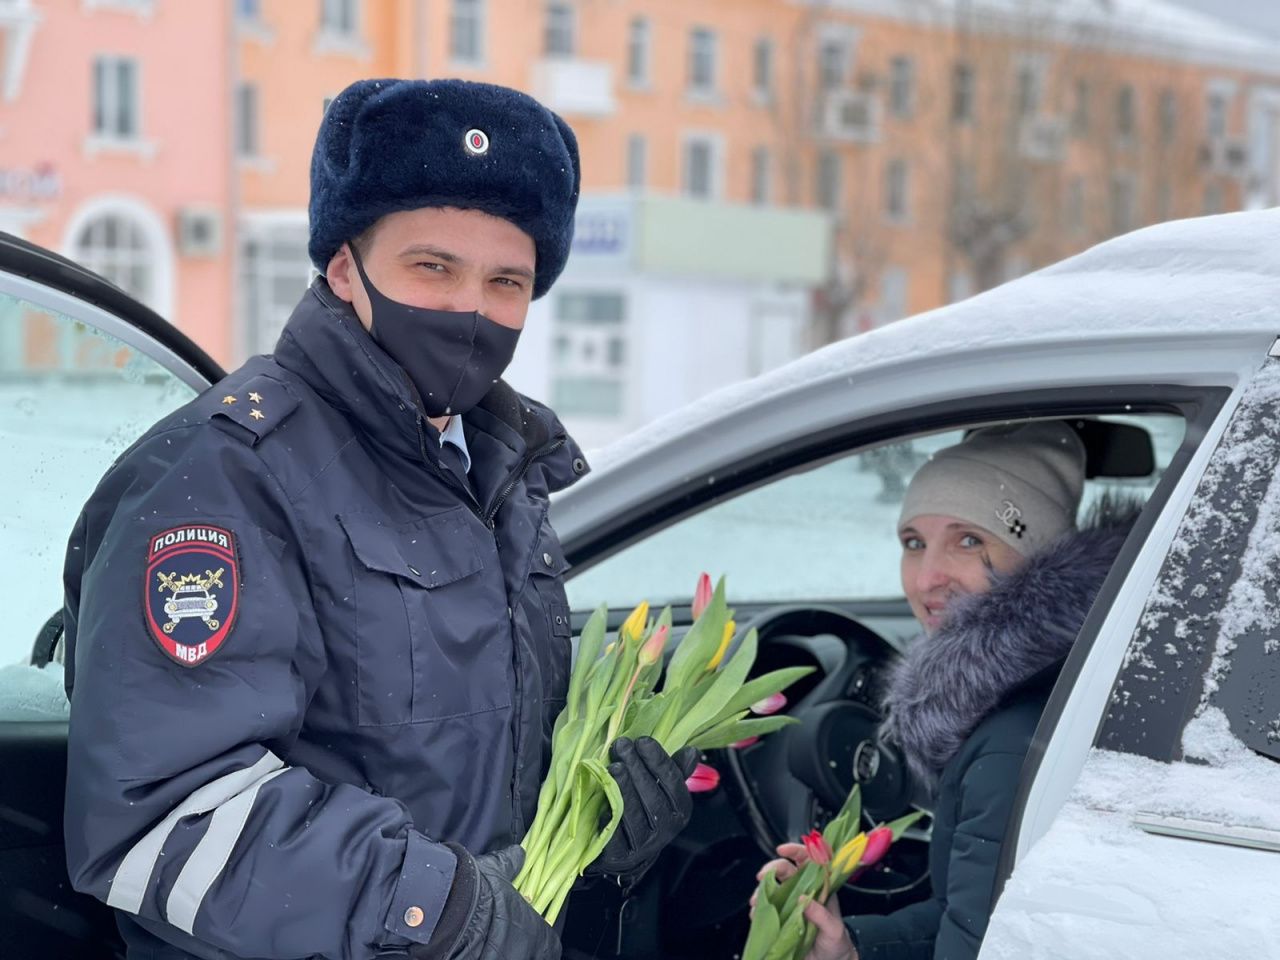 Сотрудники ГИБДД поздравили водительниц тюльпанами 